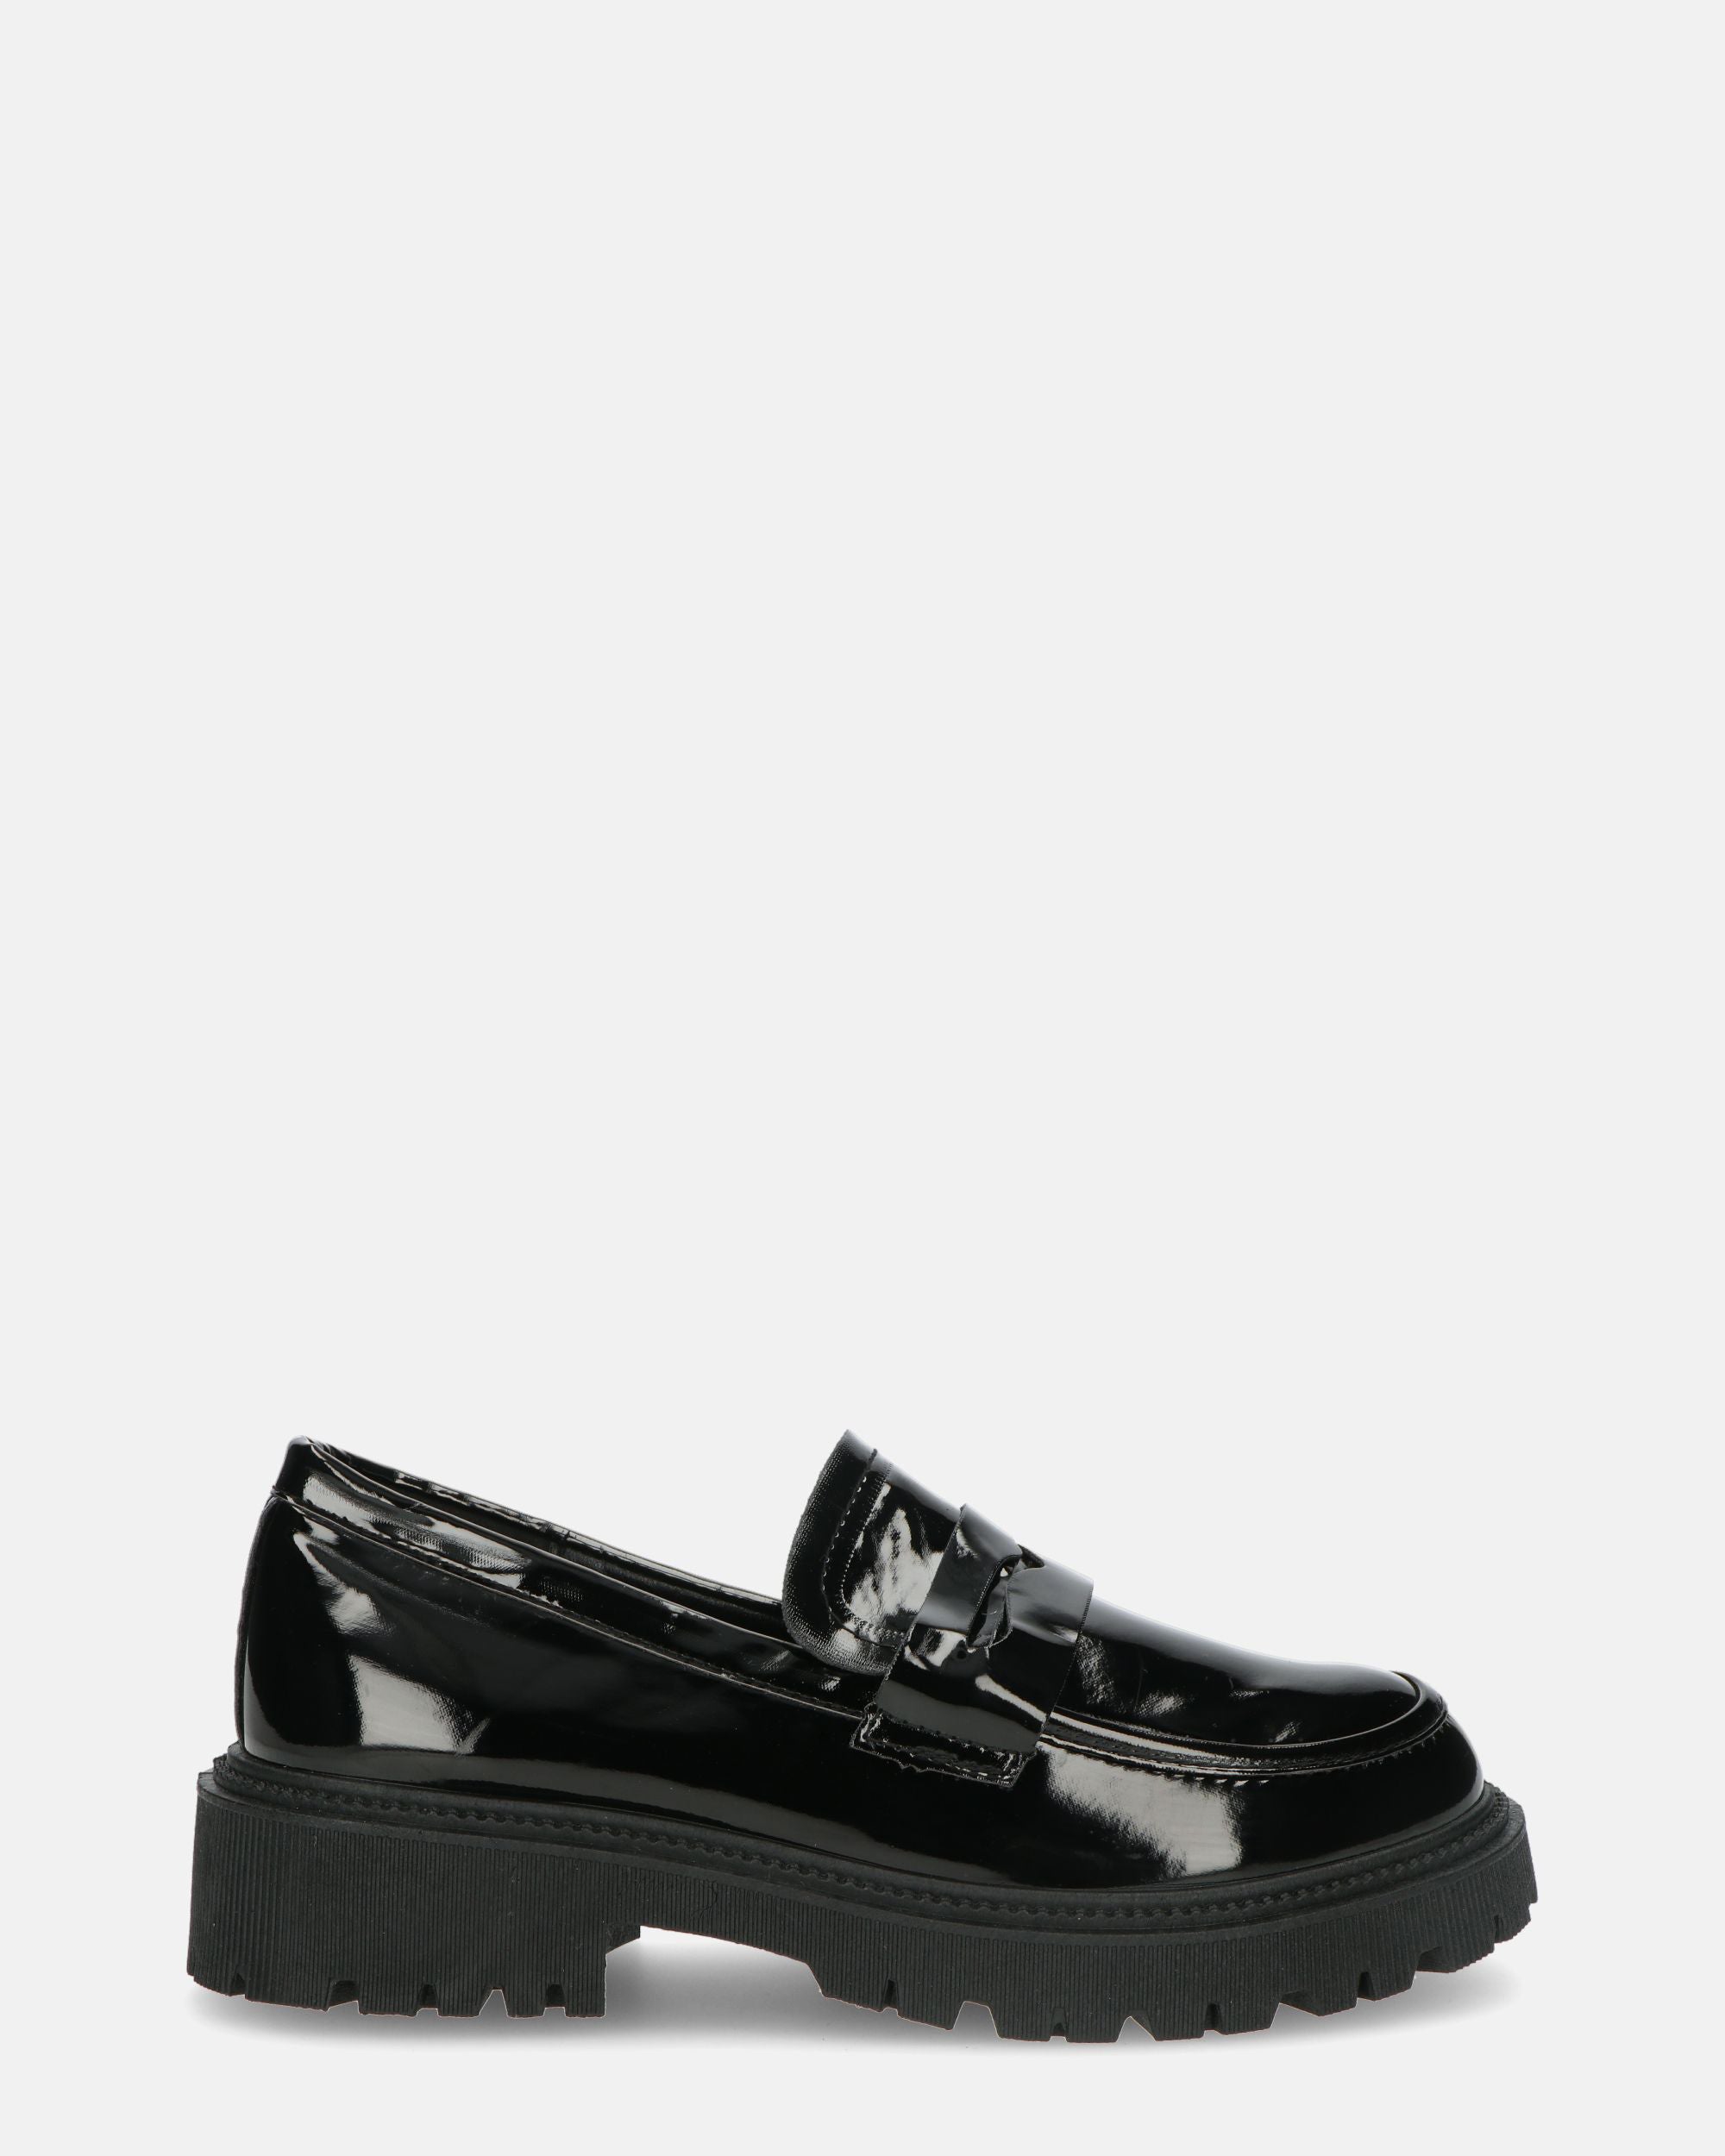 MINNIE - scarpe basse in glassy nero con tacco